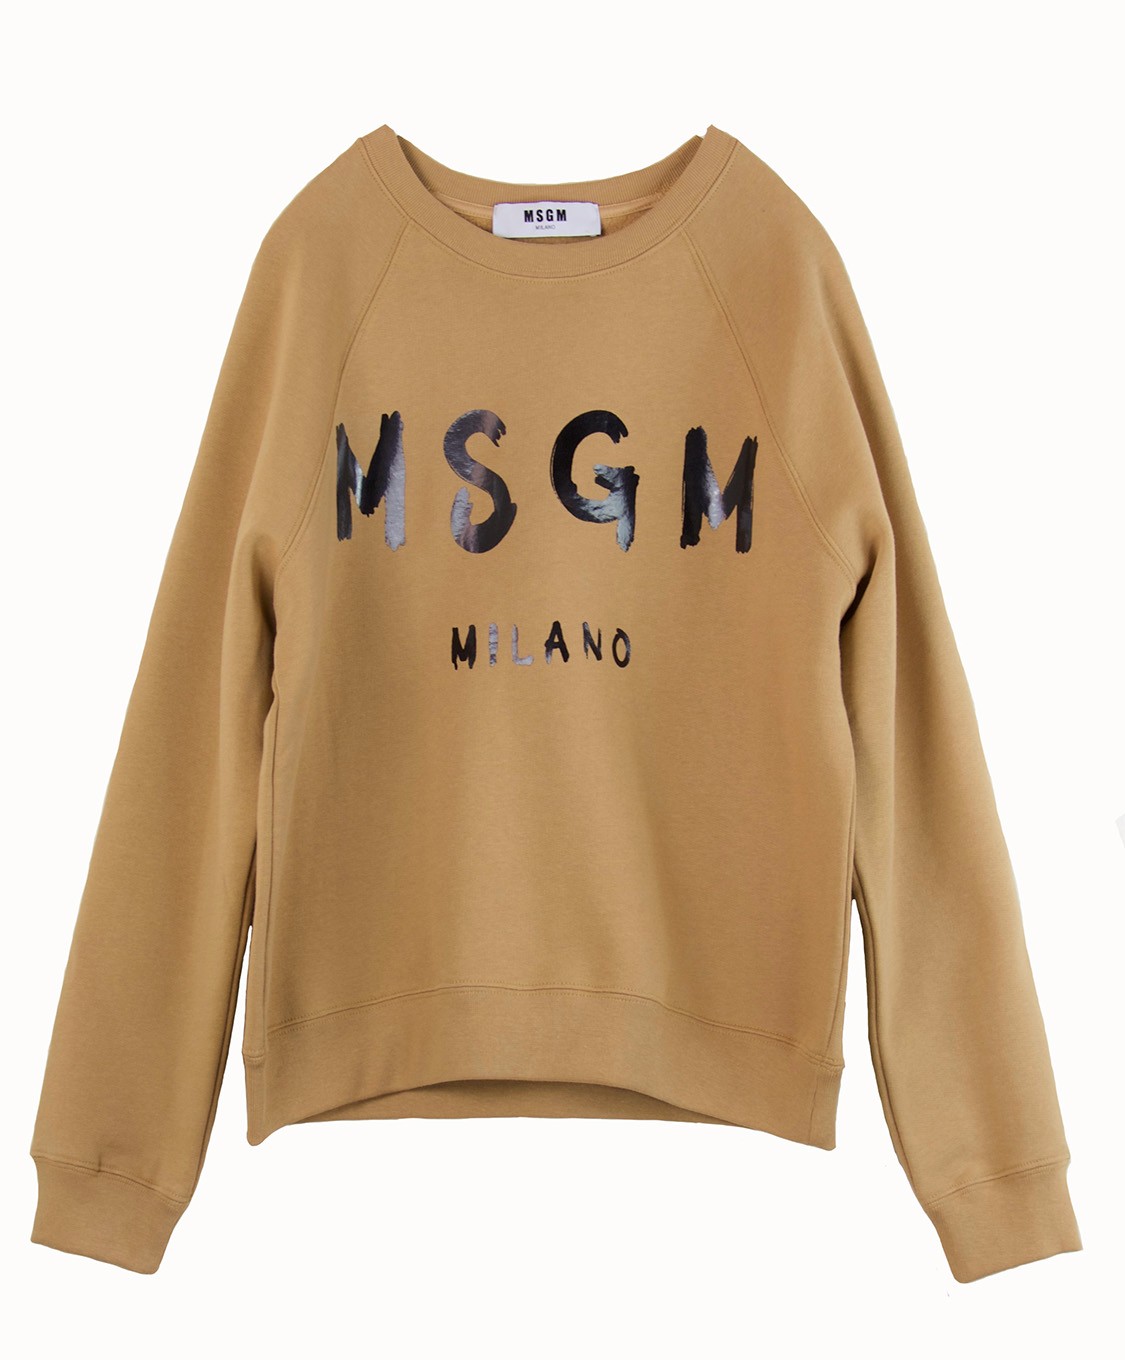 shop MSGM Sales Felpe: Felpa girocollo MSGM in 100% cotone, logo stampato in nero, color cammello.  number 783